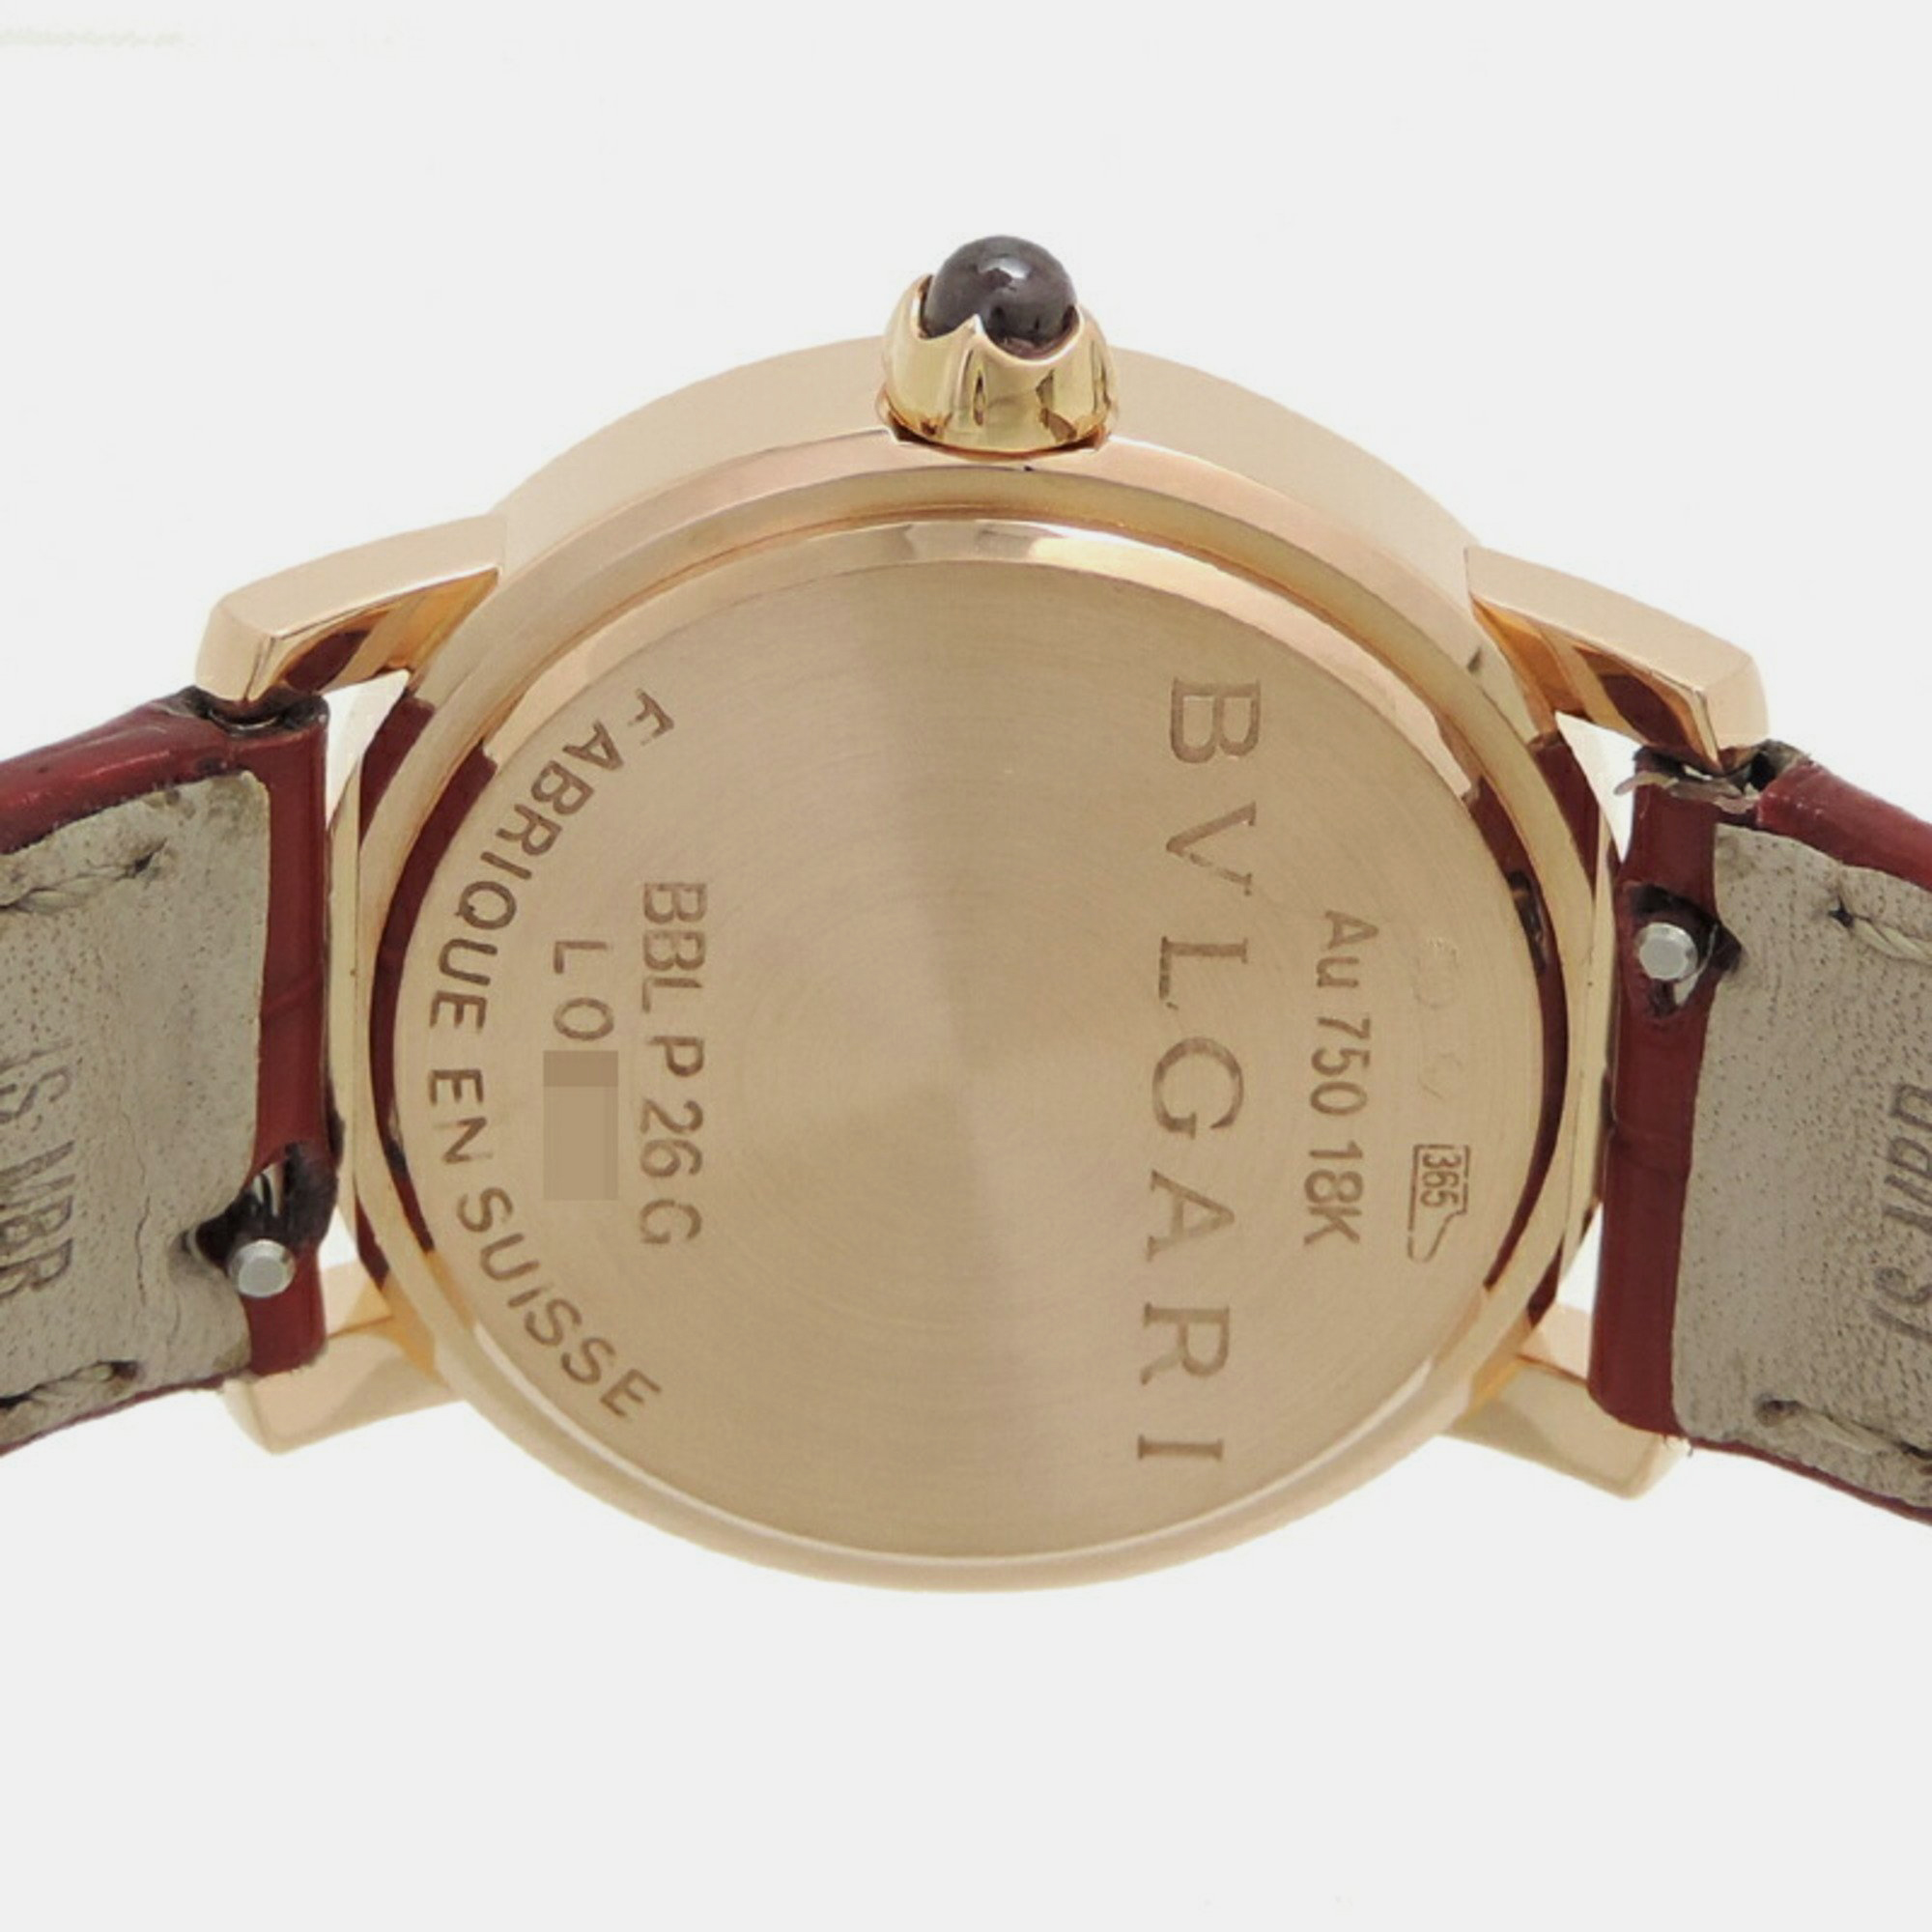 Bvlgari White Shell 18k Rose Gold Bvlgari Bvlgari 102751 Quartz Women's Wristwatch 26 Mm